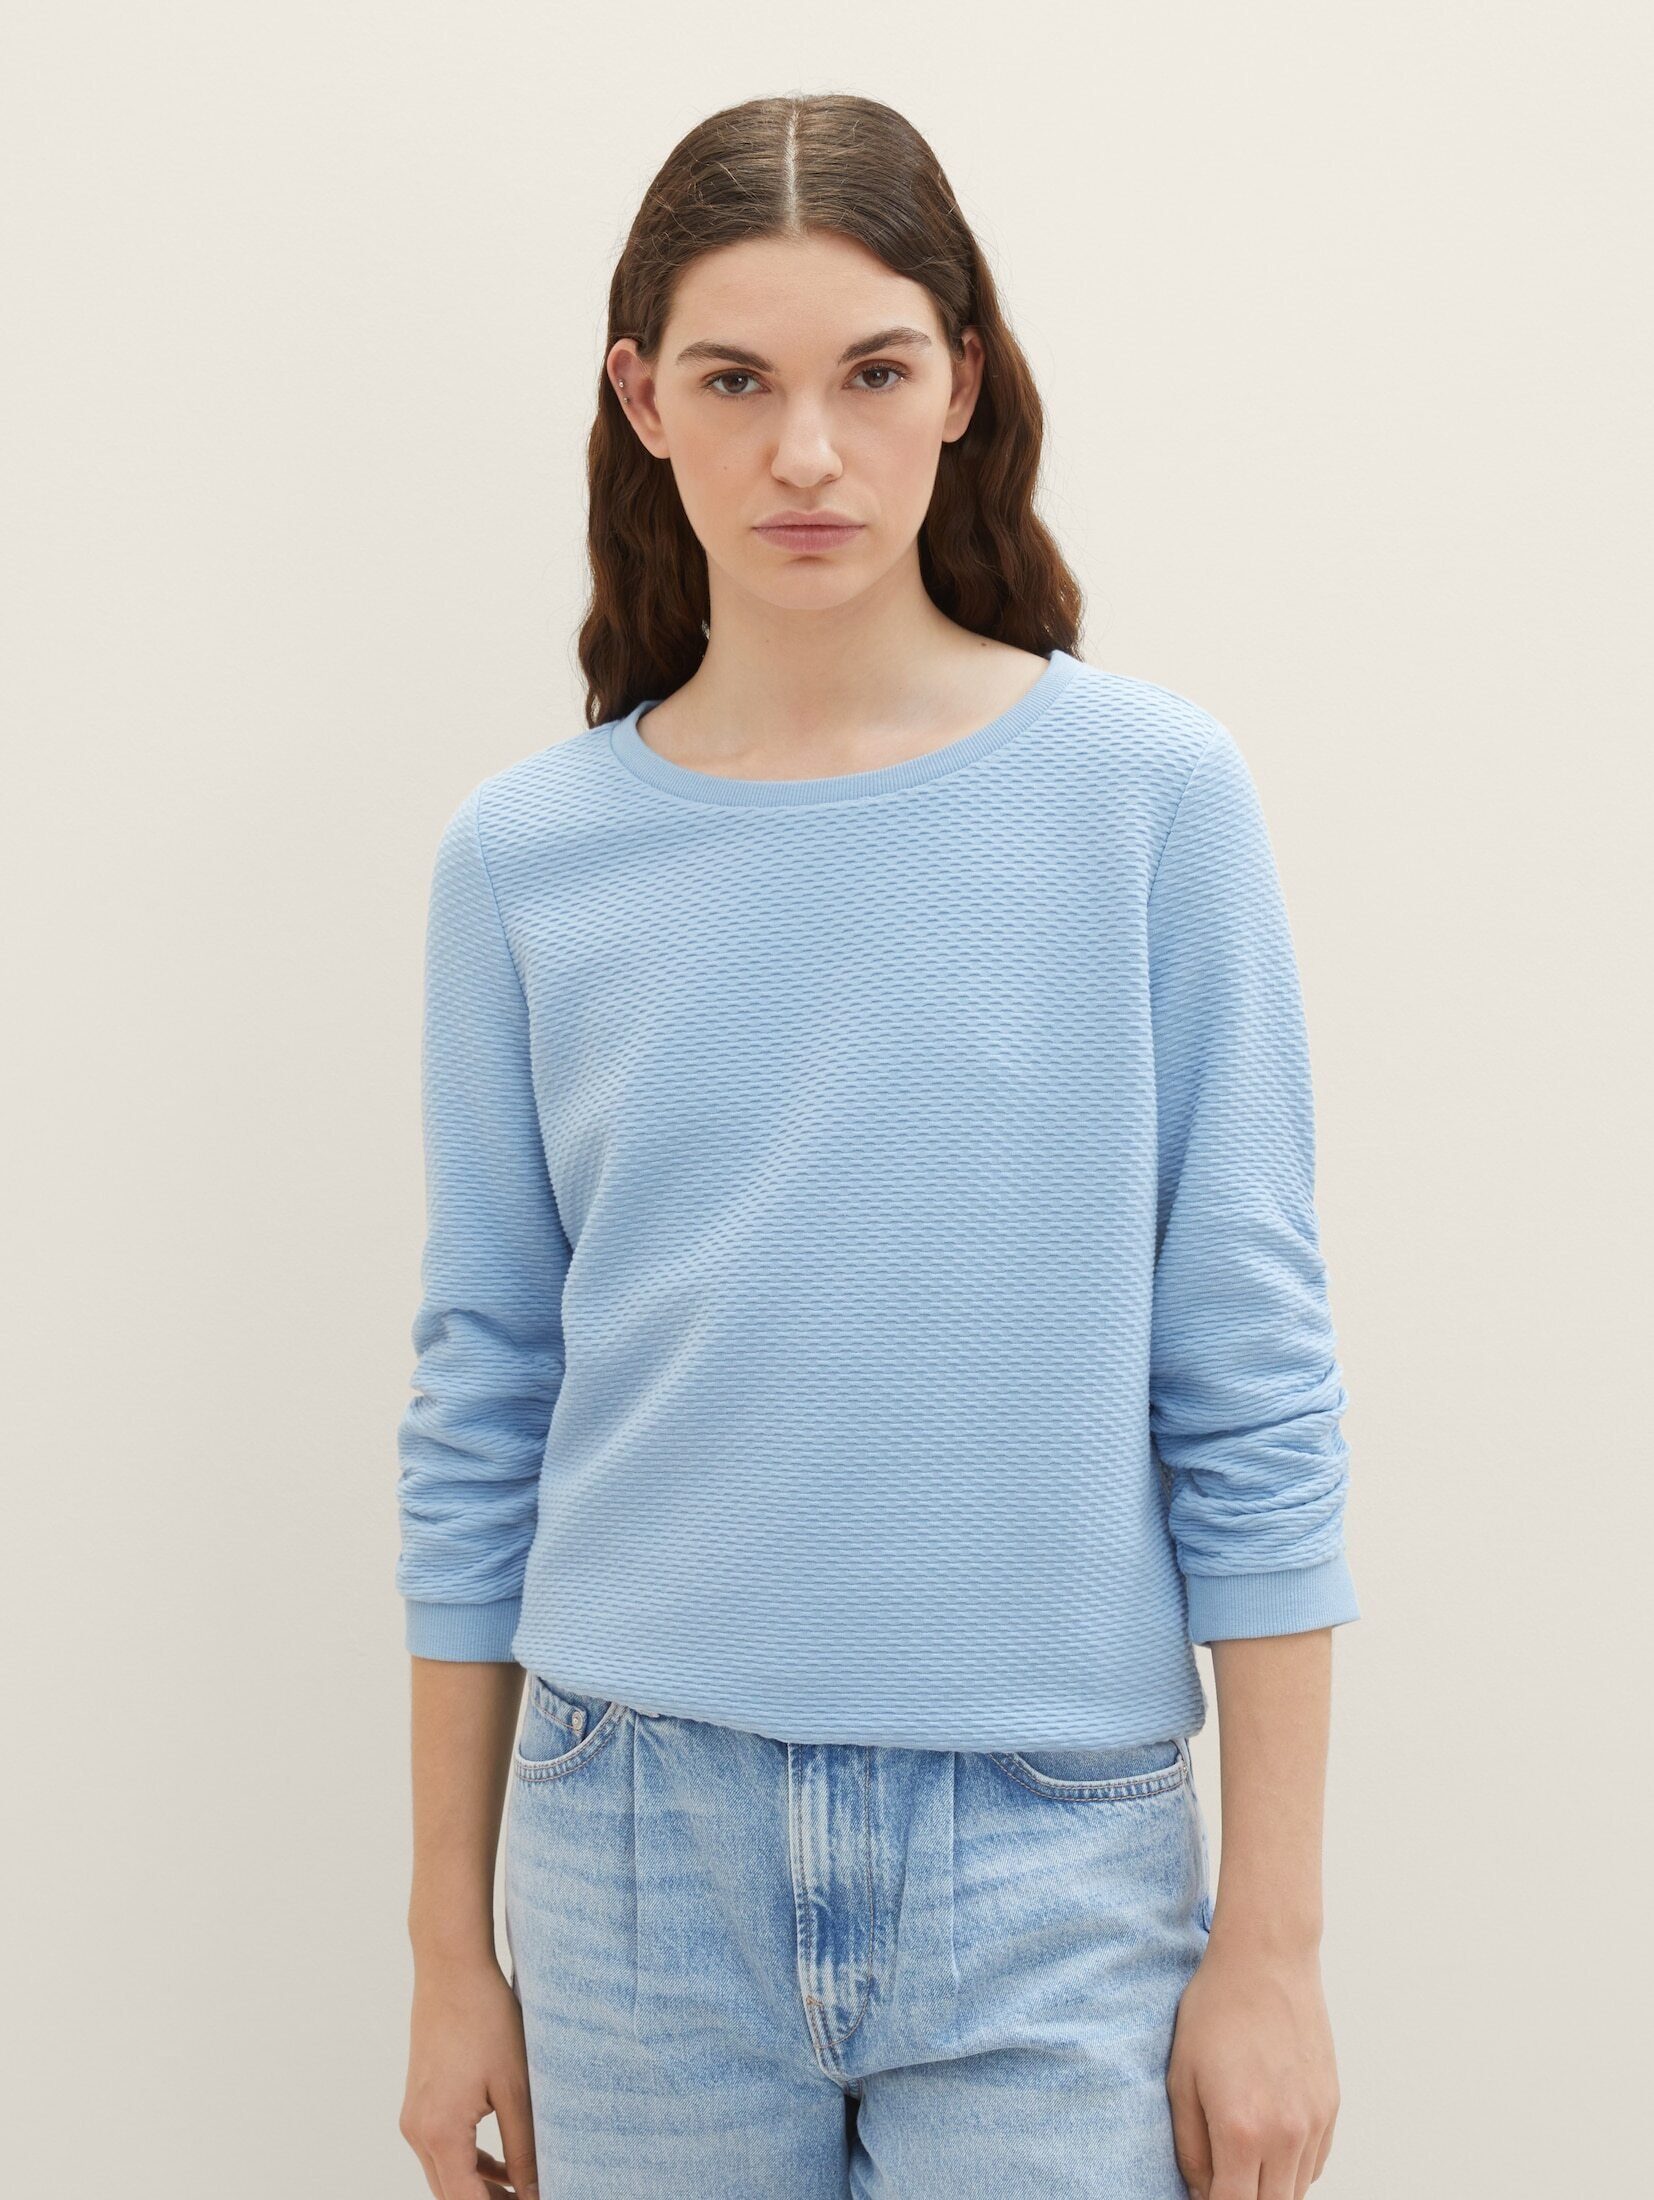 Hochklassig TOM TAILOR Denim Strukturiertes Charming Sweatshirt Soft Blue Sweatshirt